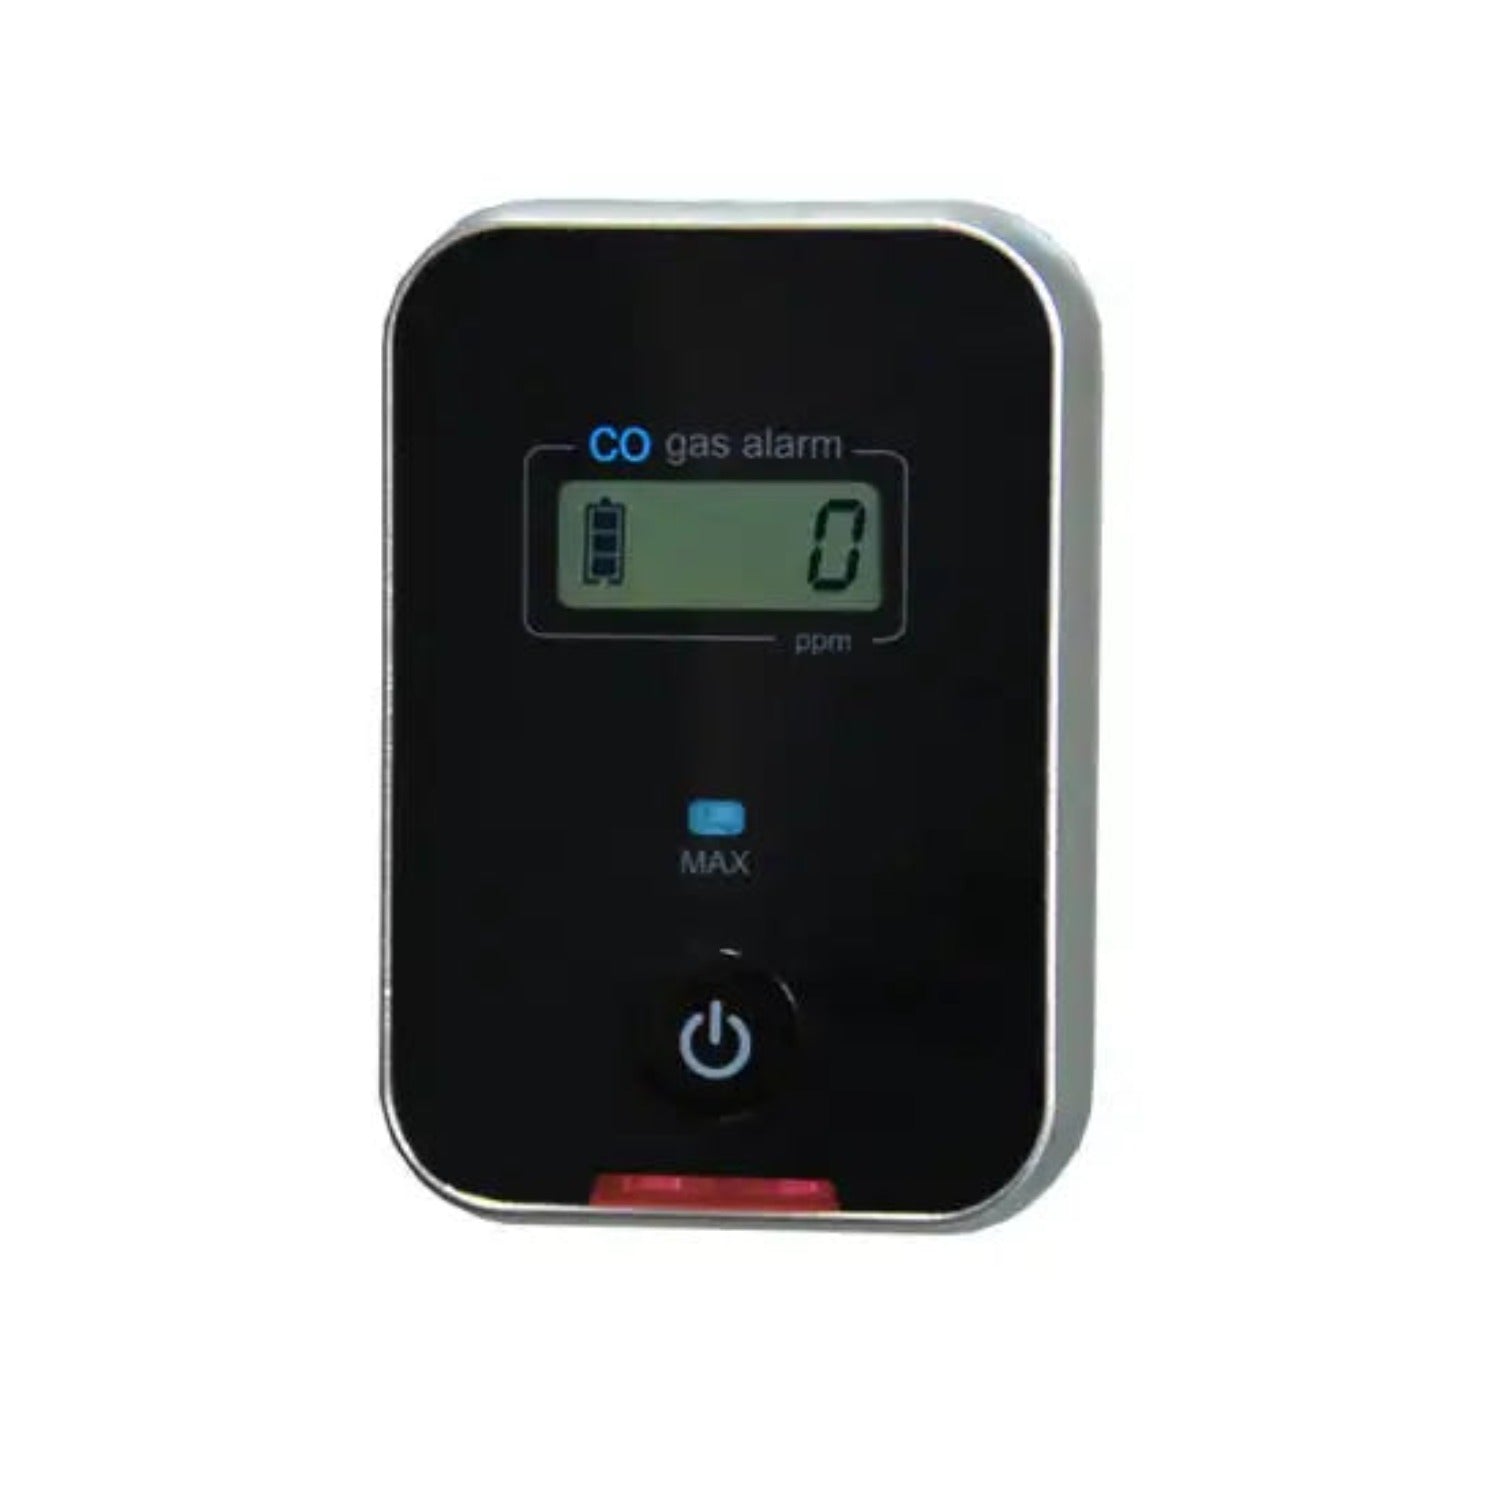 LifeBasis Carbon Monoxide Detector